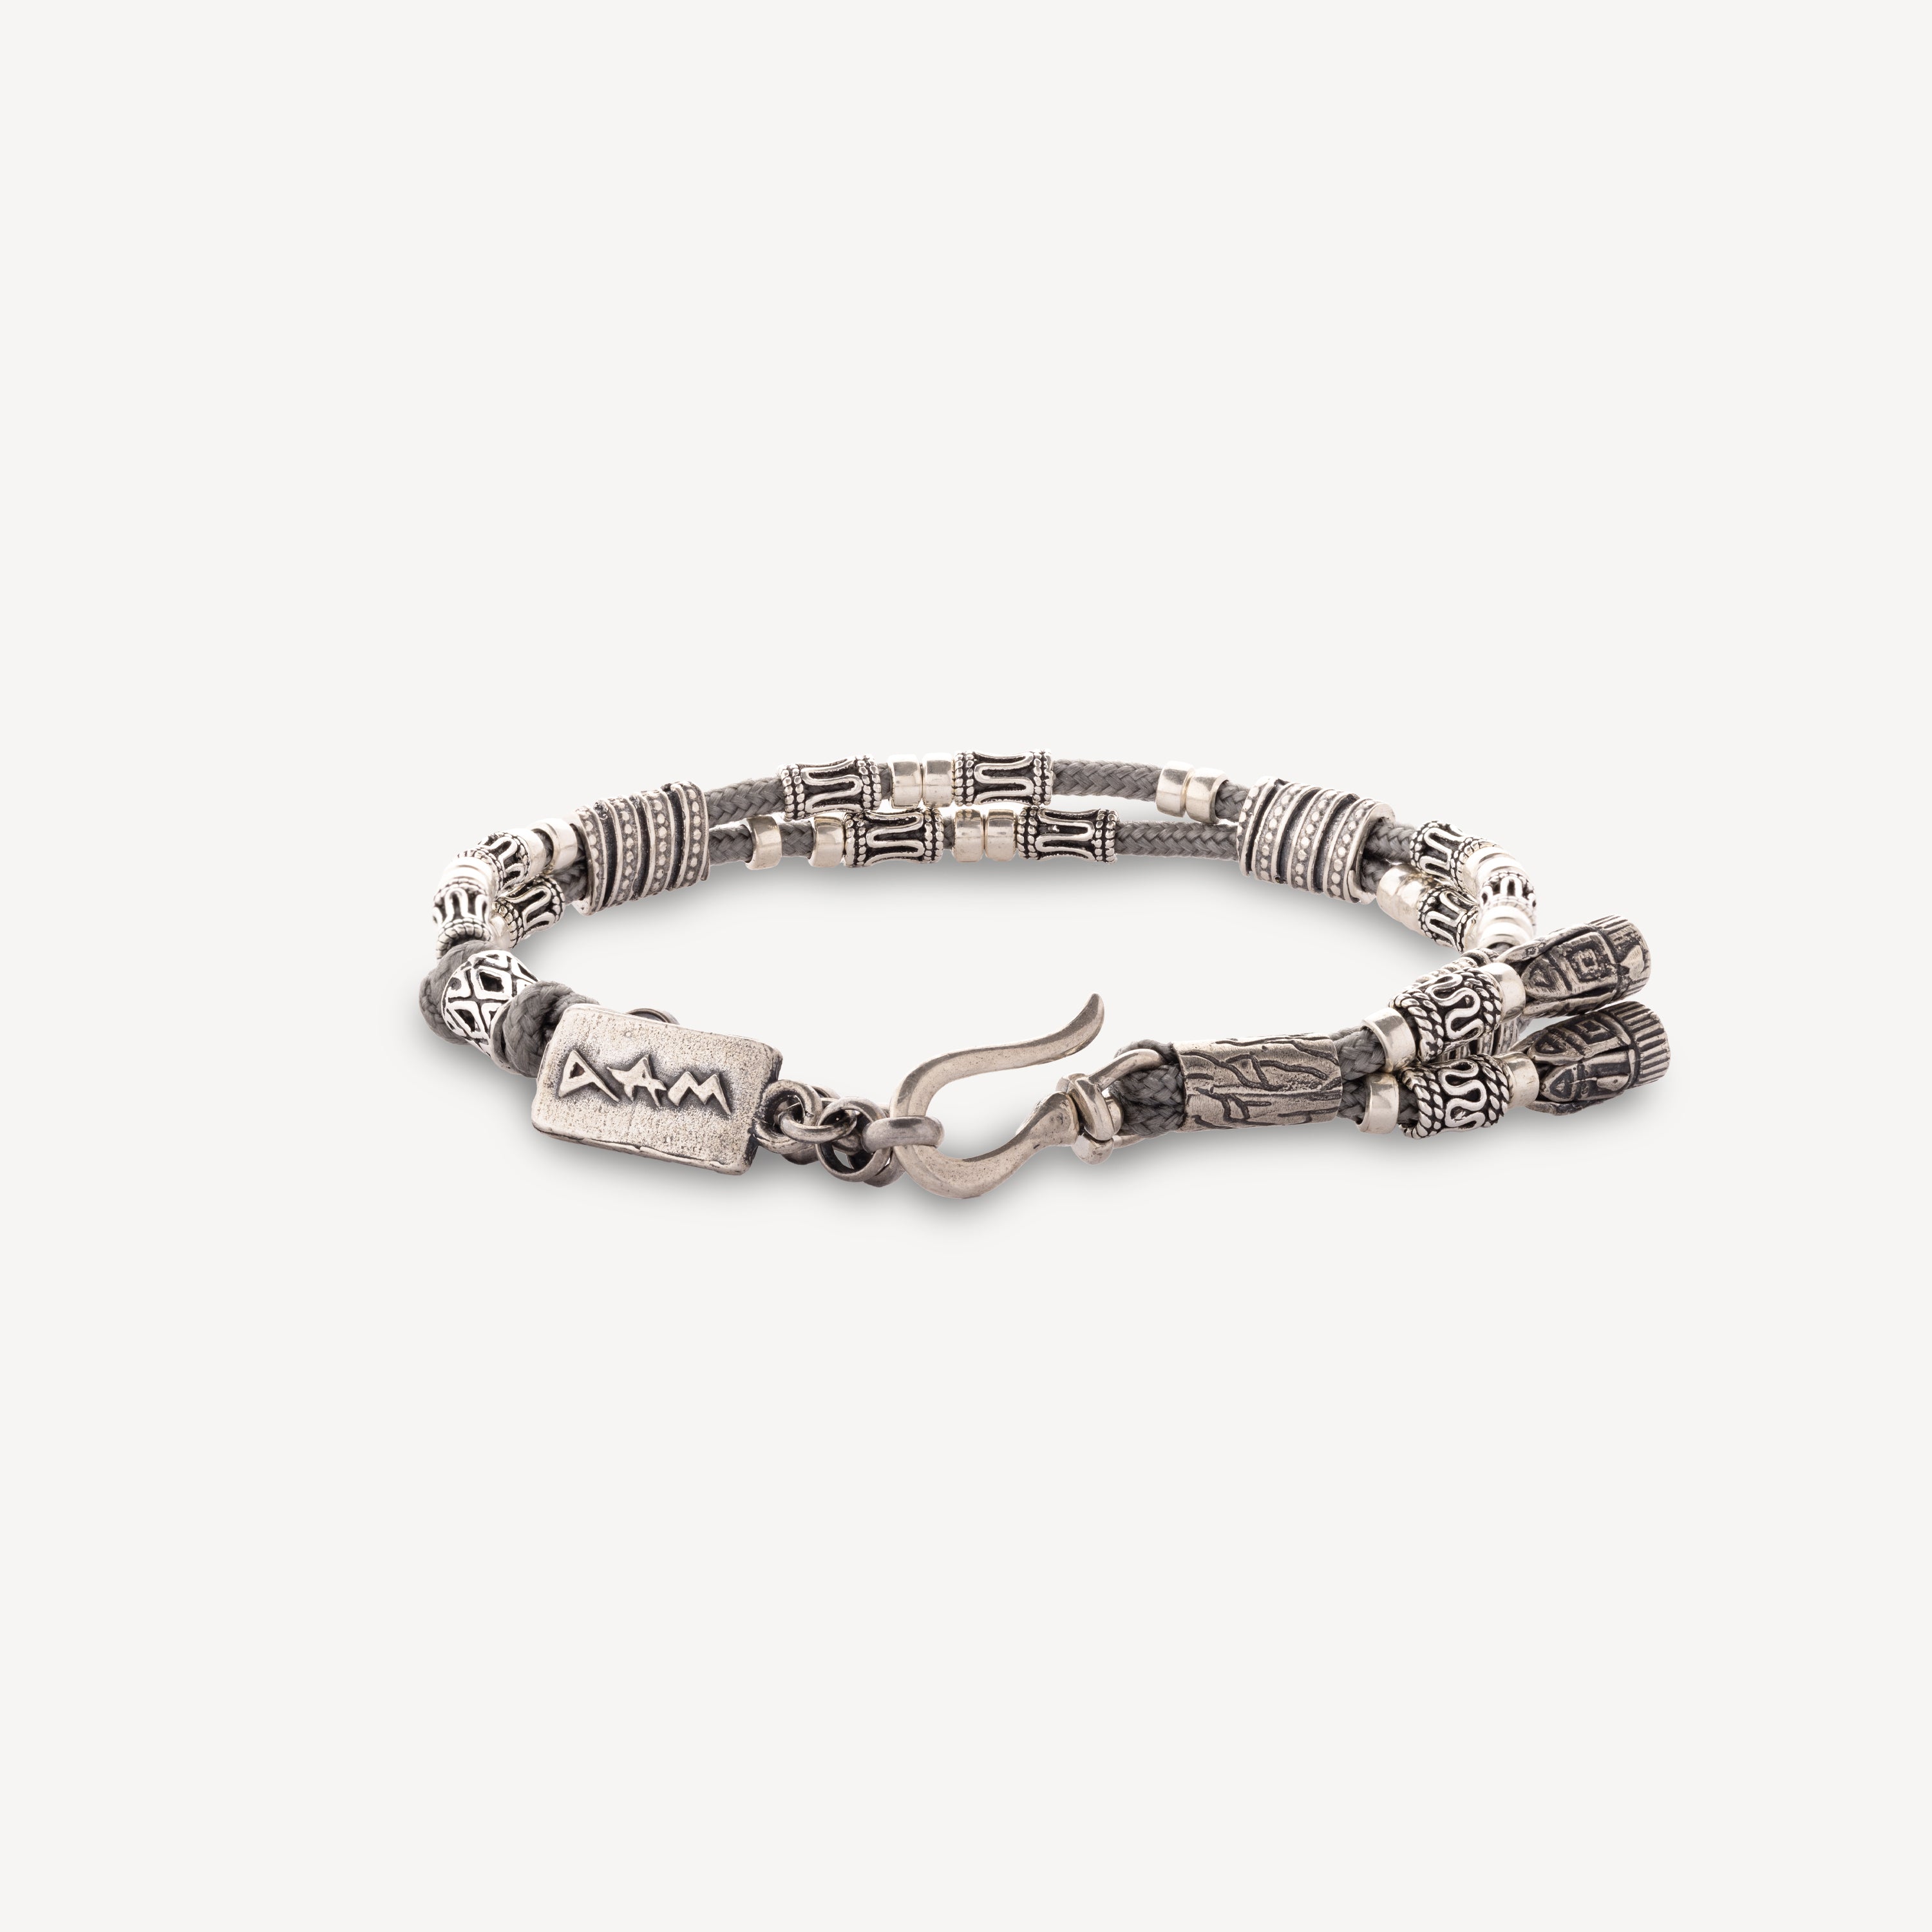 Elie single tour gray bracelet